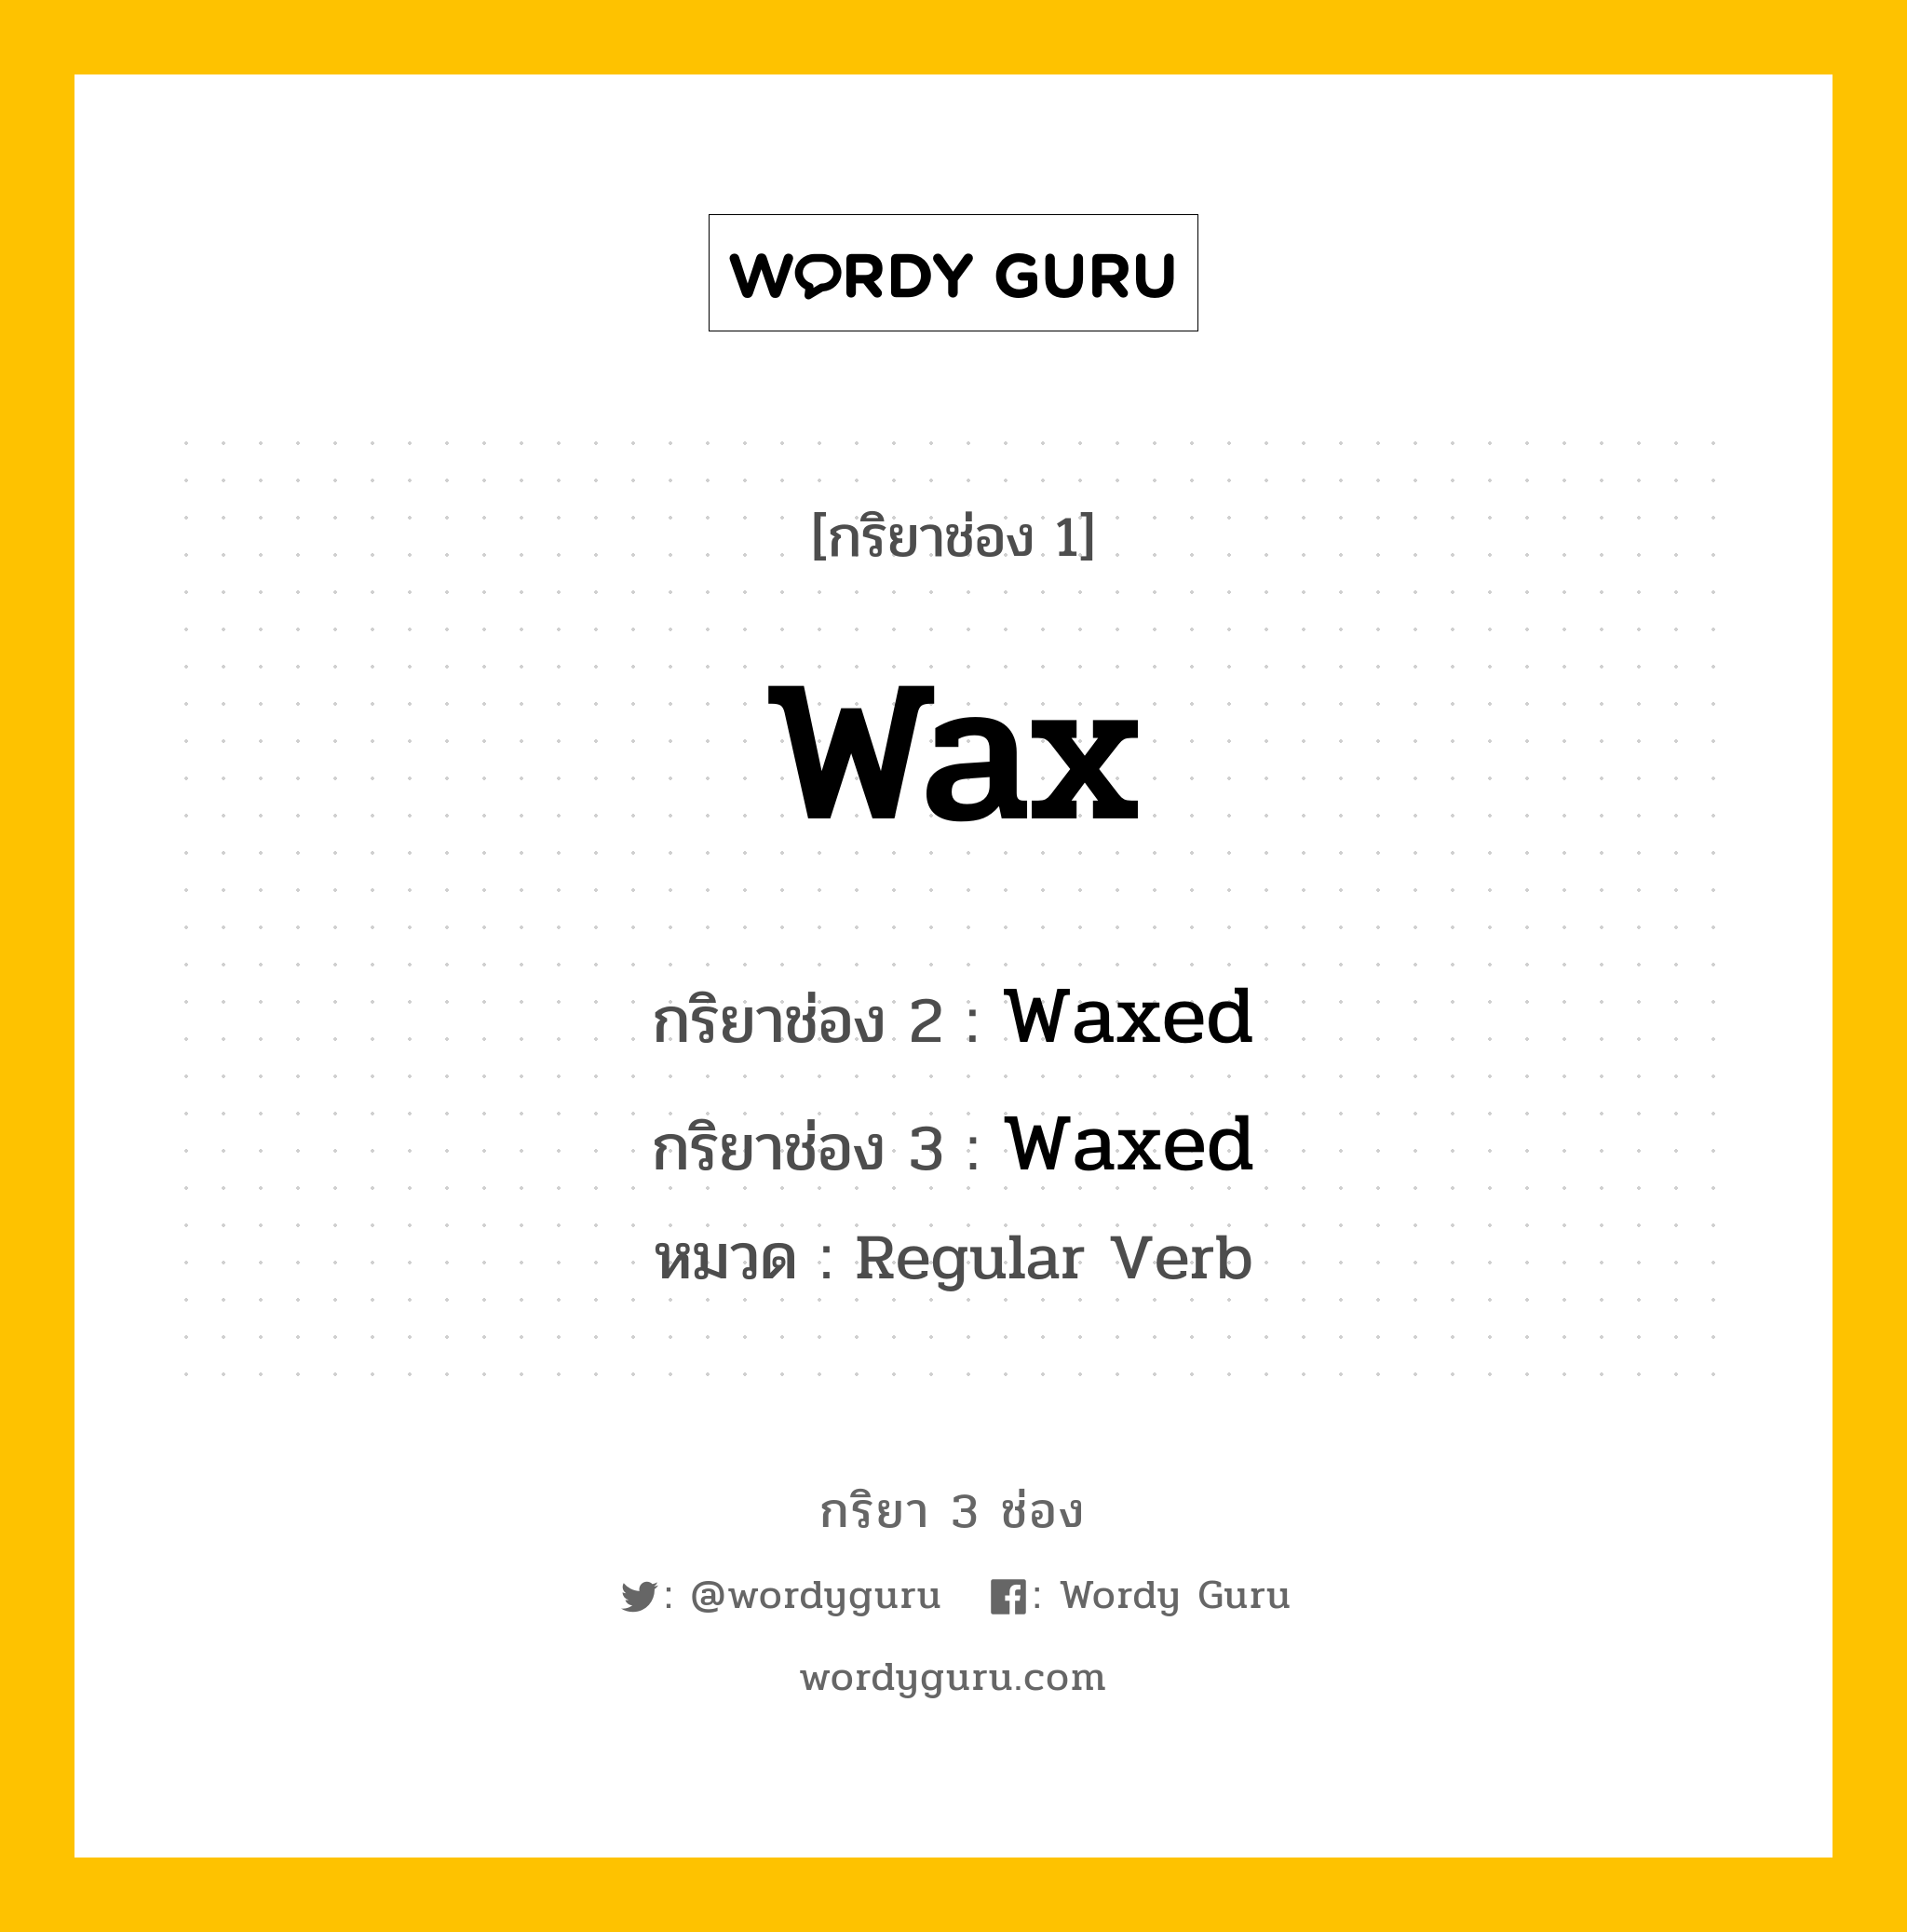 กริยา 3 ช่อง: Wax ช่อง 2 Wax ช่อง 3 คืออะไร, กริยาช่อง 1 Wax กริยาช่อง 2 Waxed กริยาช่อง 3 Waxed หมวด Regular Verb หมวด Regular Verb